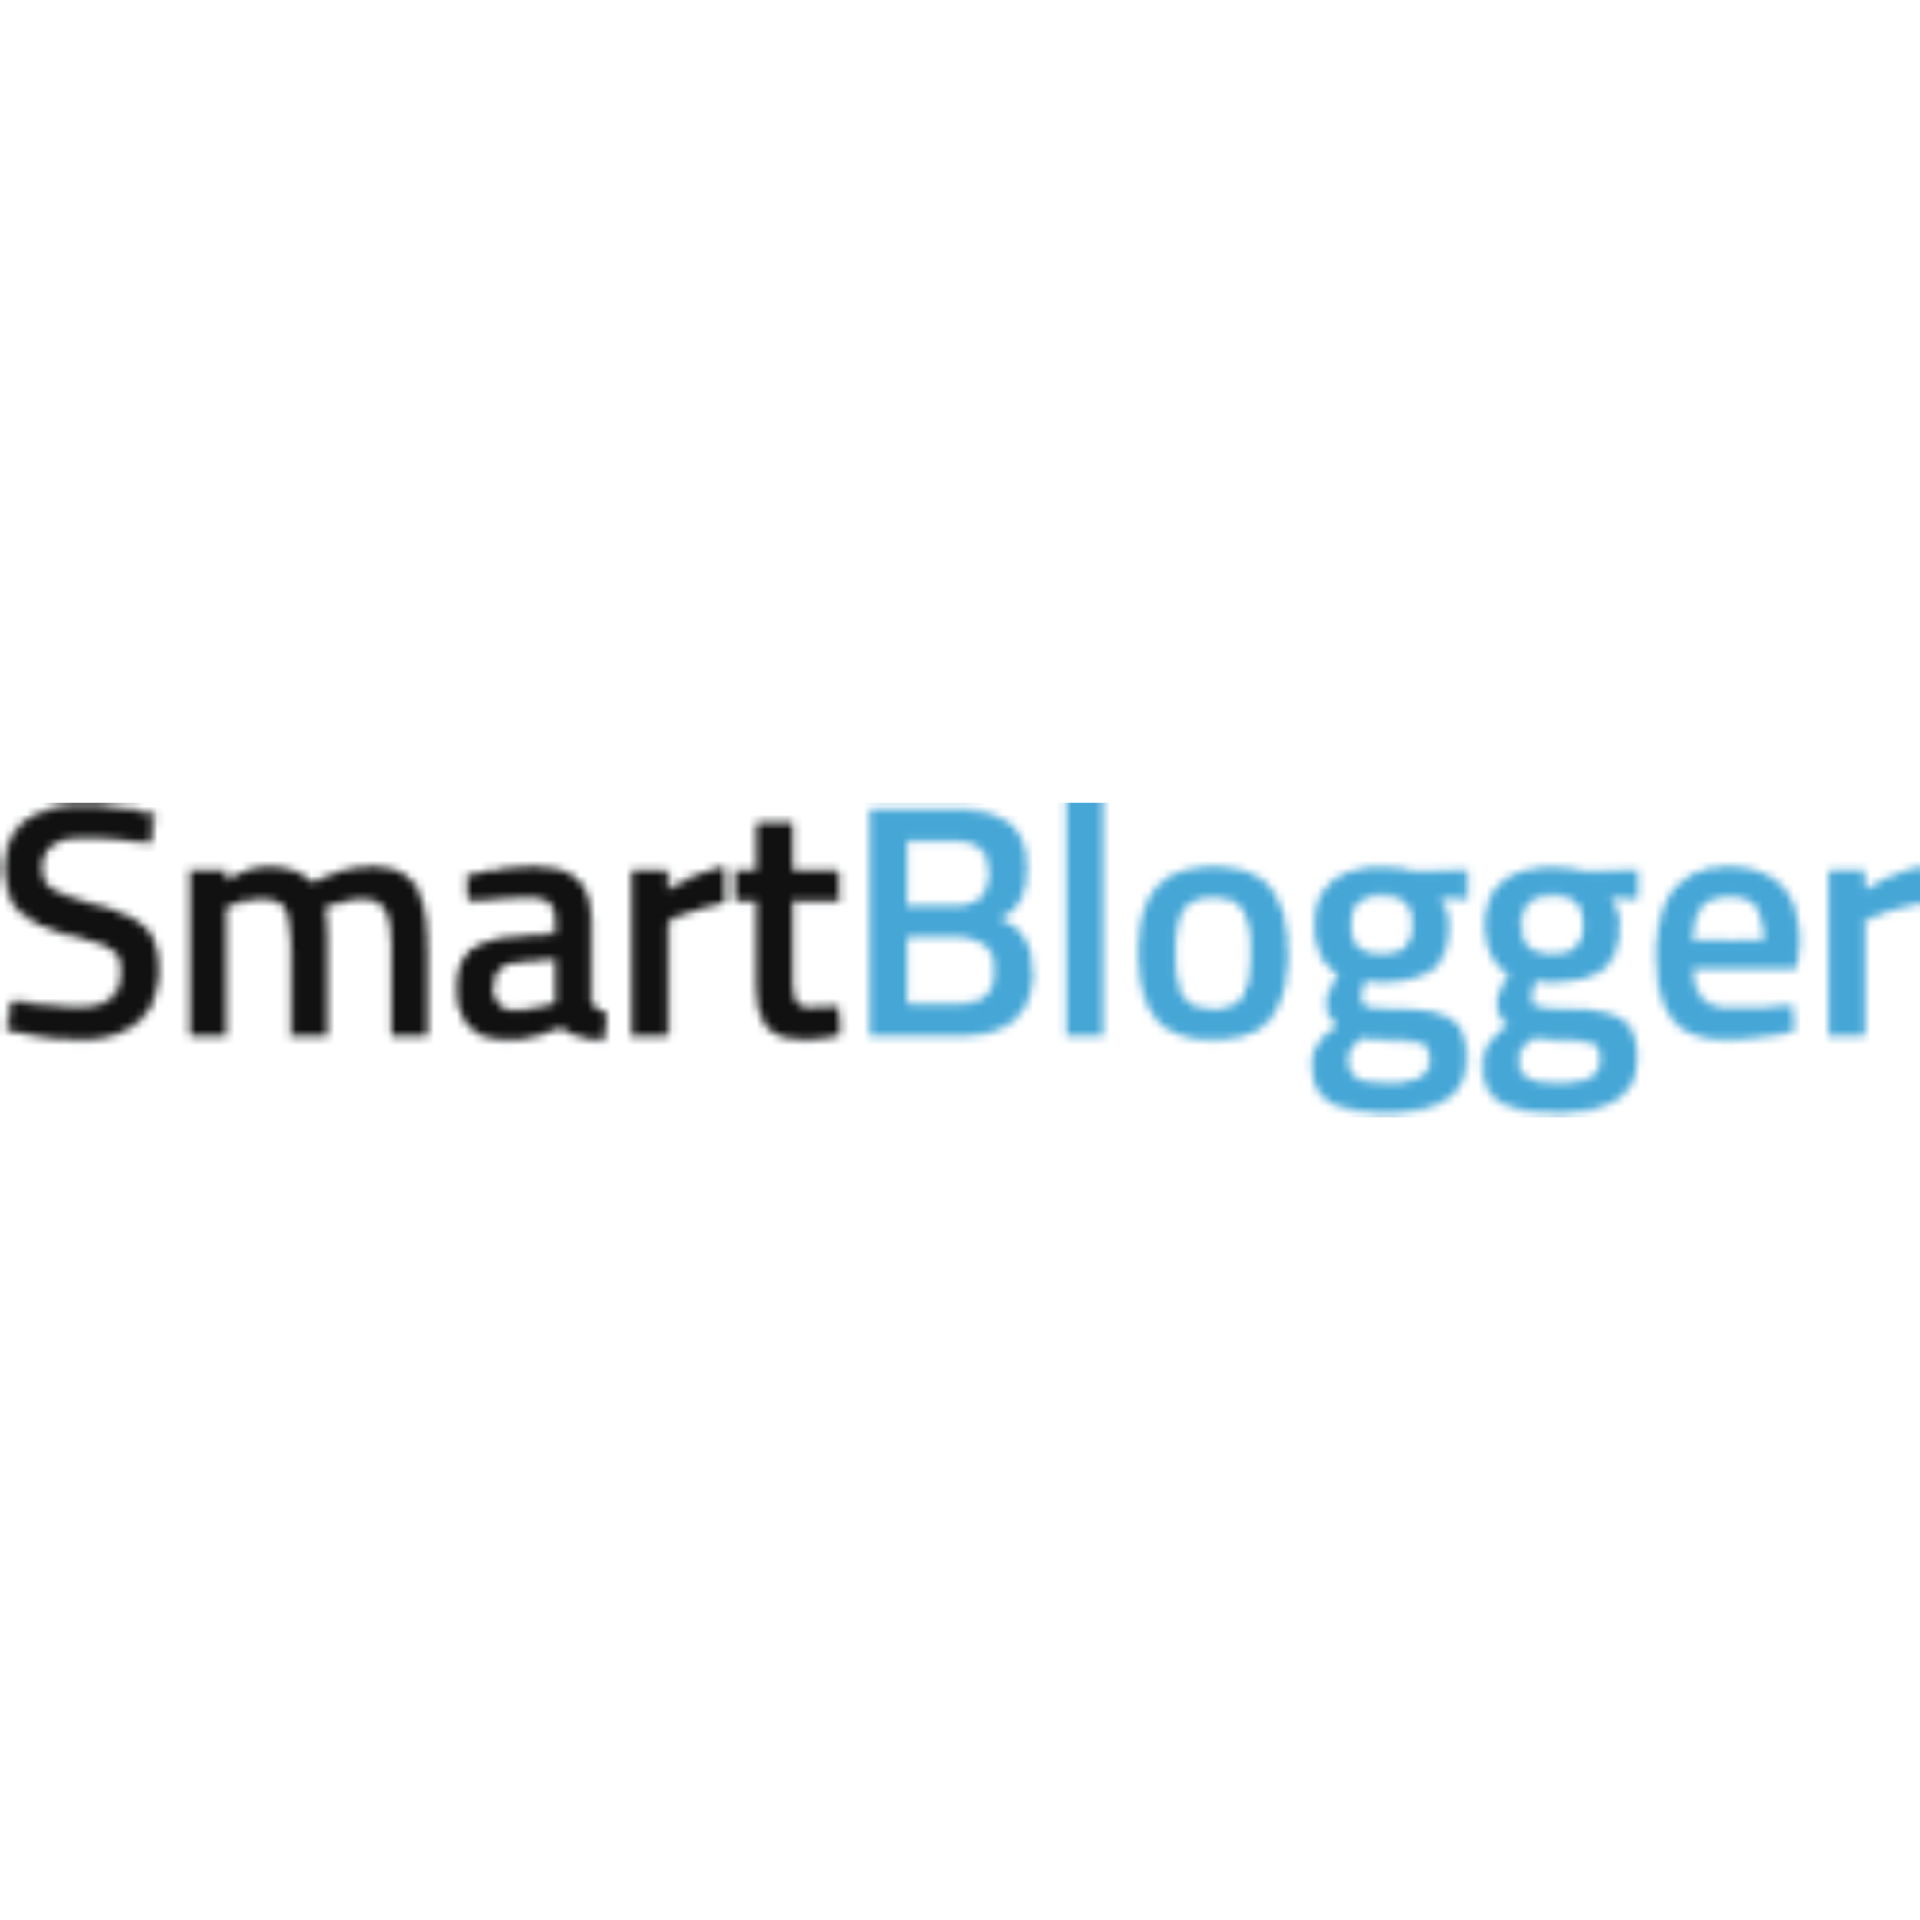 SmartBlogger.com